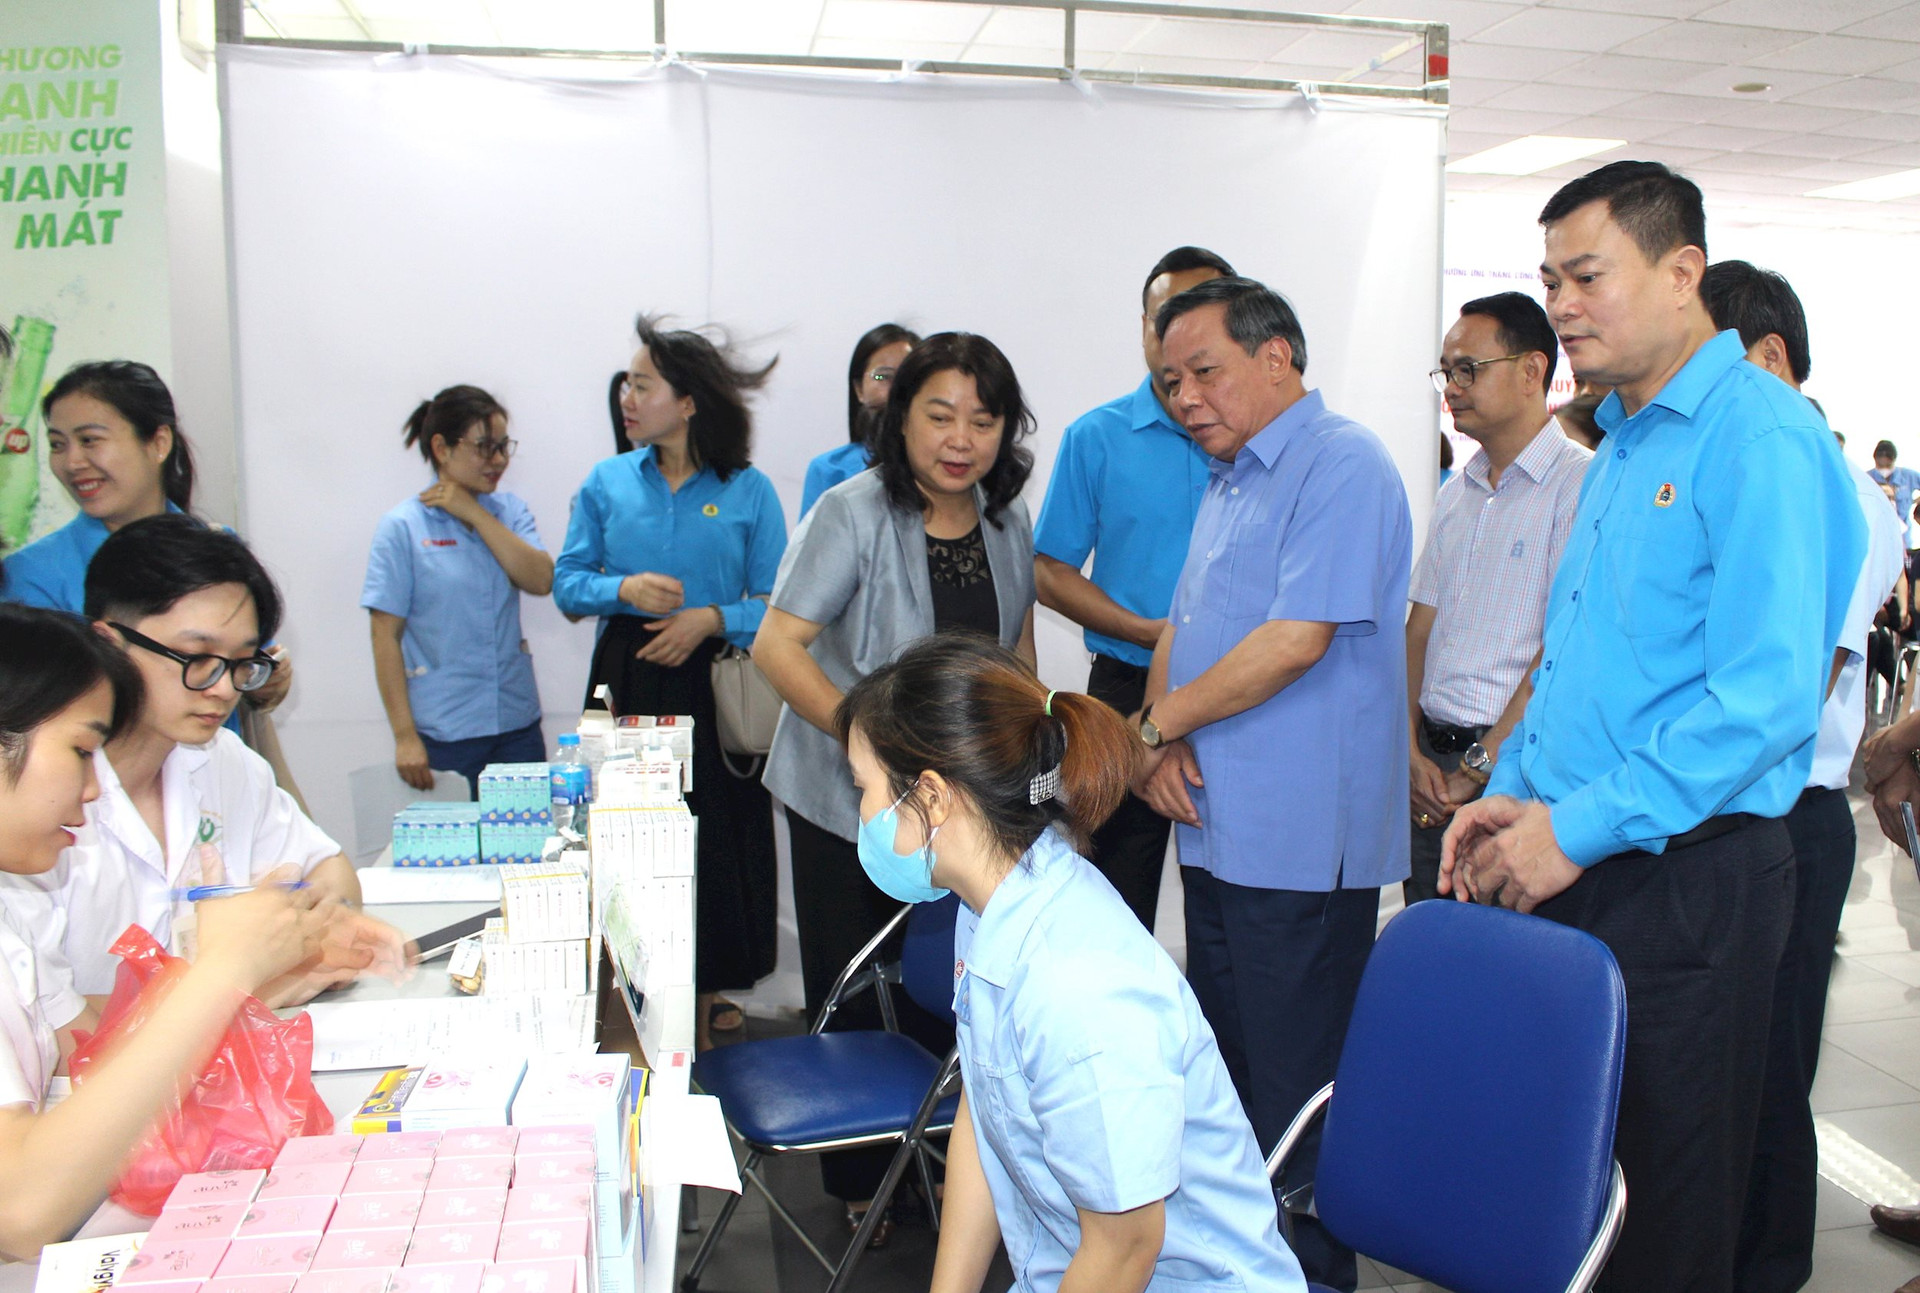 Phó Bí thư Thành ủy Nguyễn Văn Phong, Chủ tịch Liên đoàn Lao động thành phố Phạm Quang Thanh thăm, động viên các nữ công nhân lao động đang khám, tư vấn sức khỏe tại chương trình.